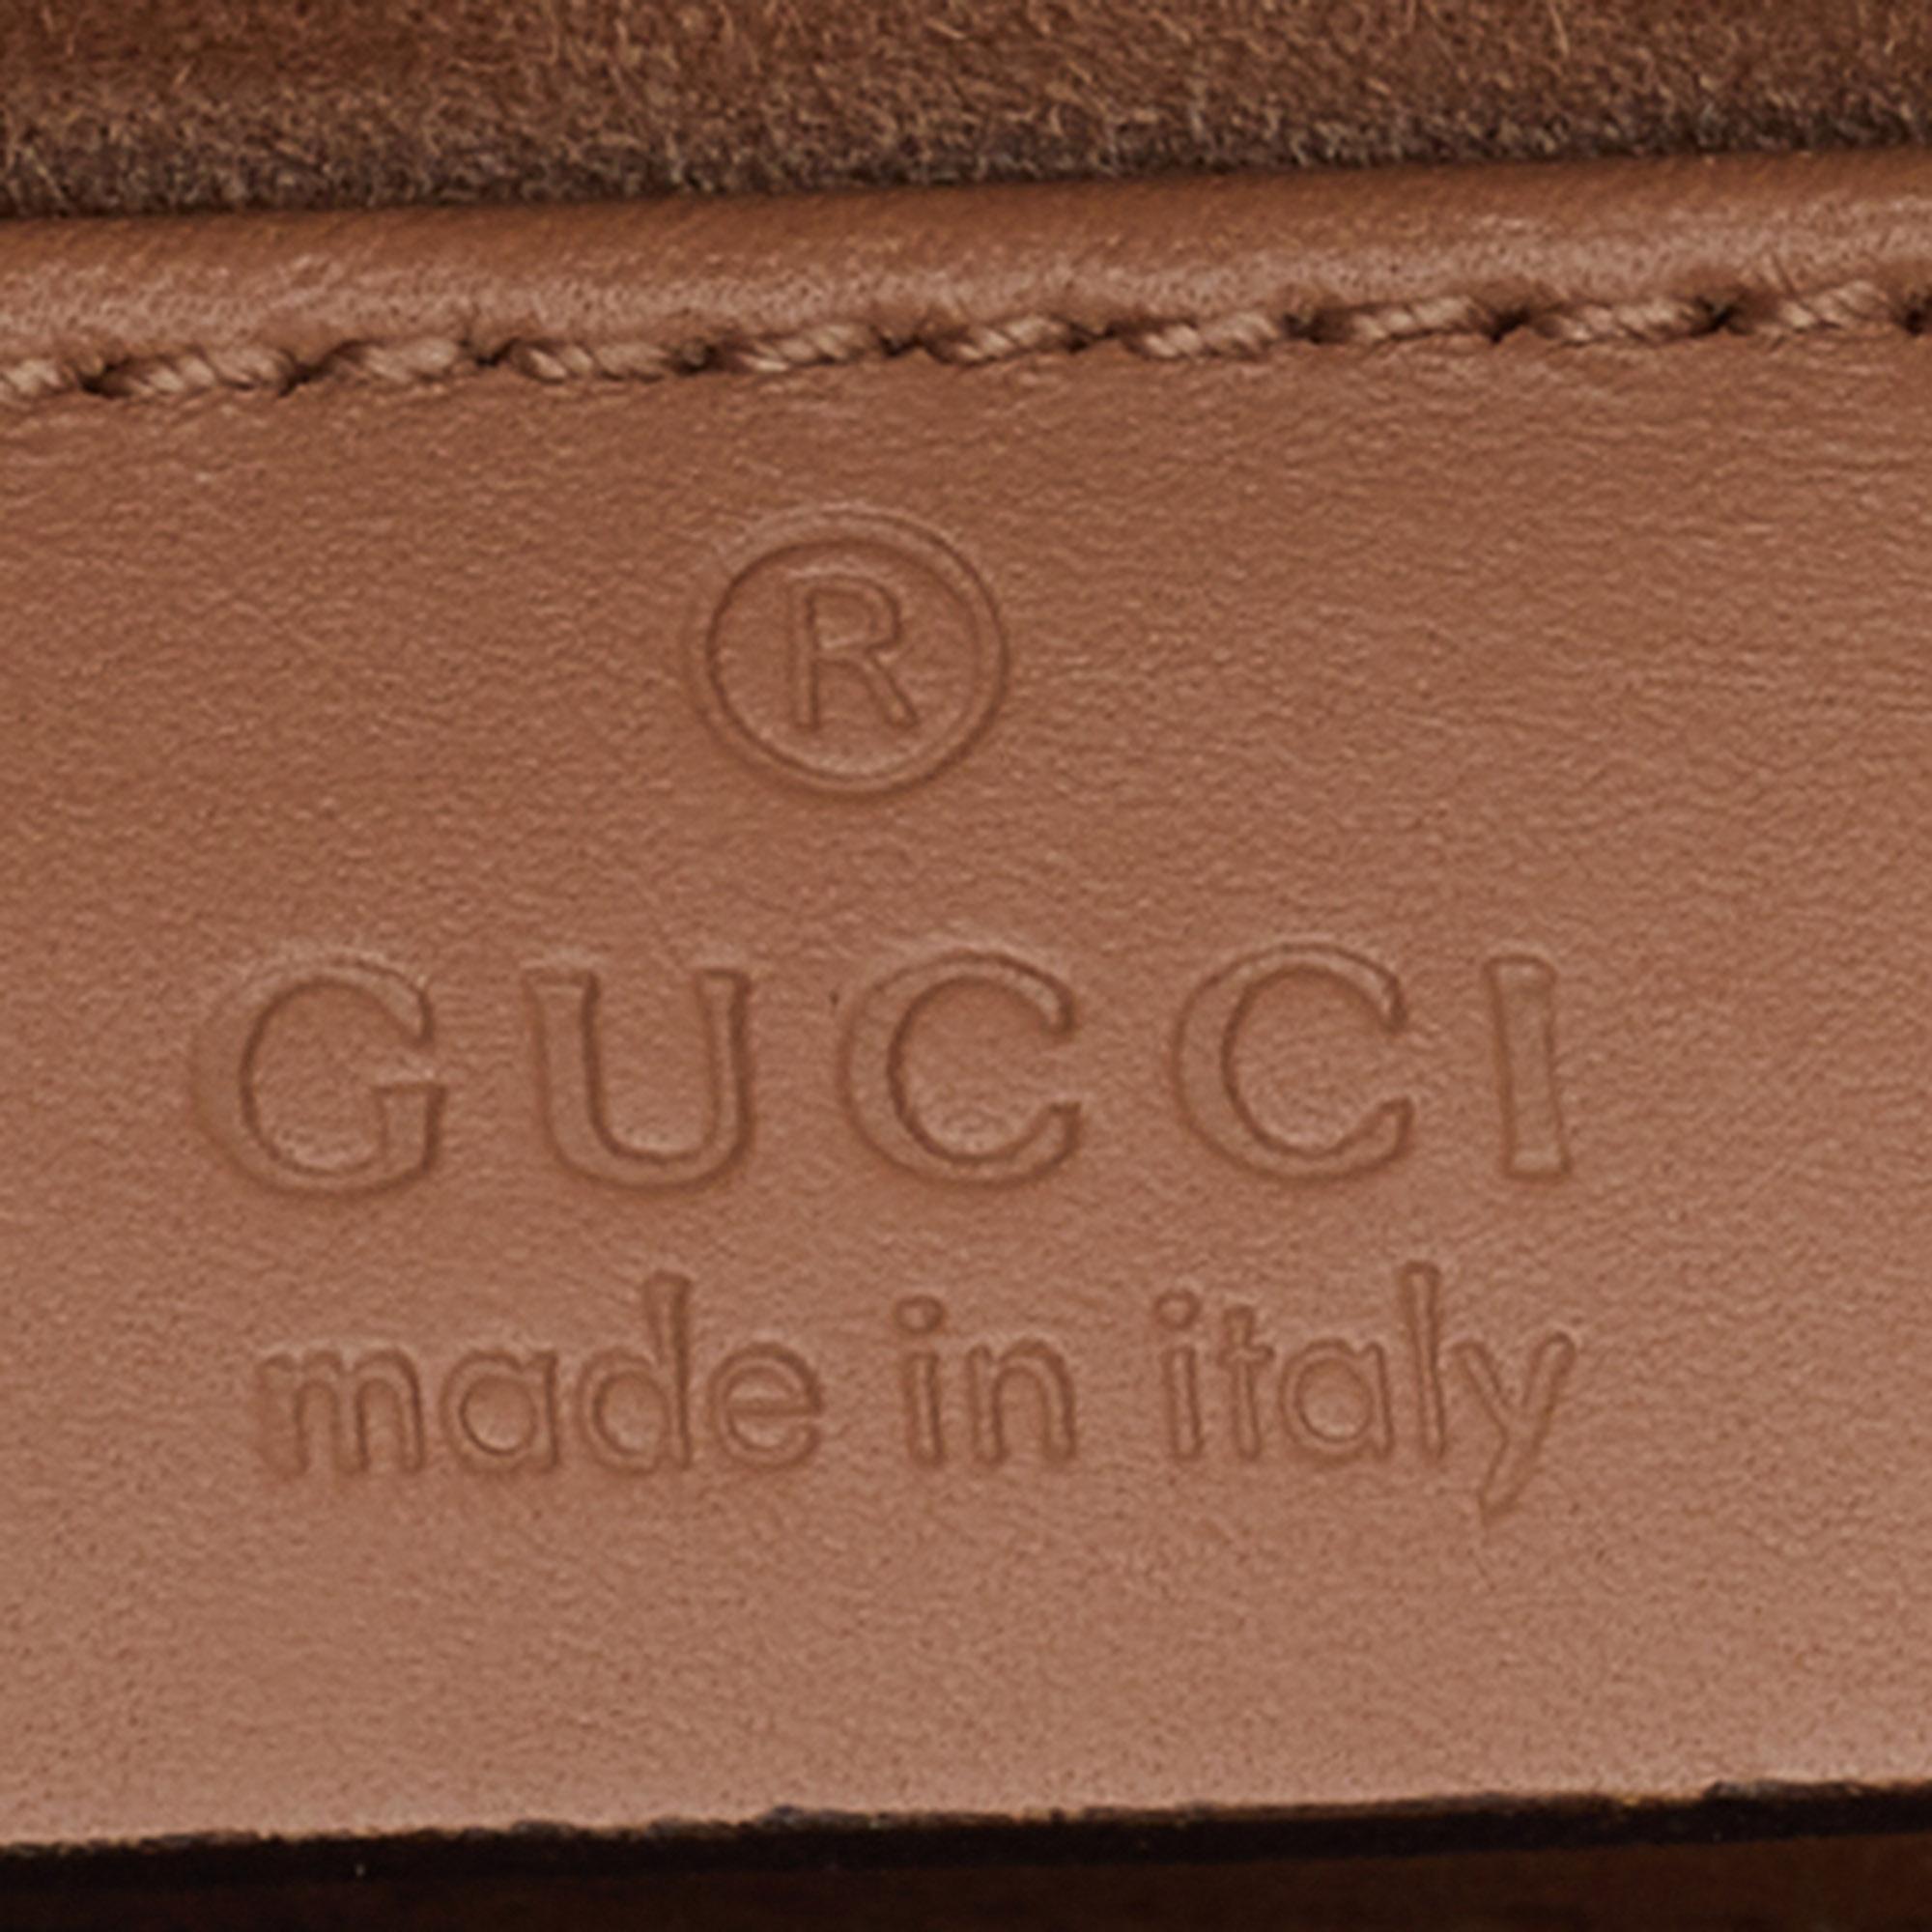 Gucci Beige Leather Sylvie Mini Web Chain Shoulder Bag 2